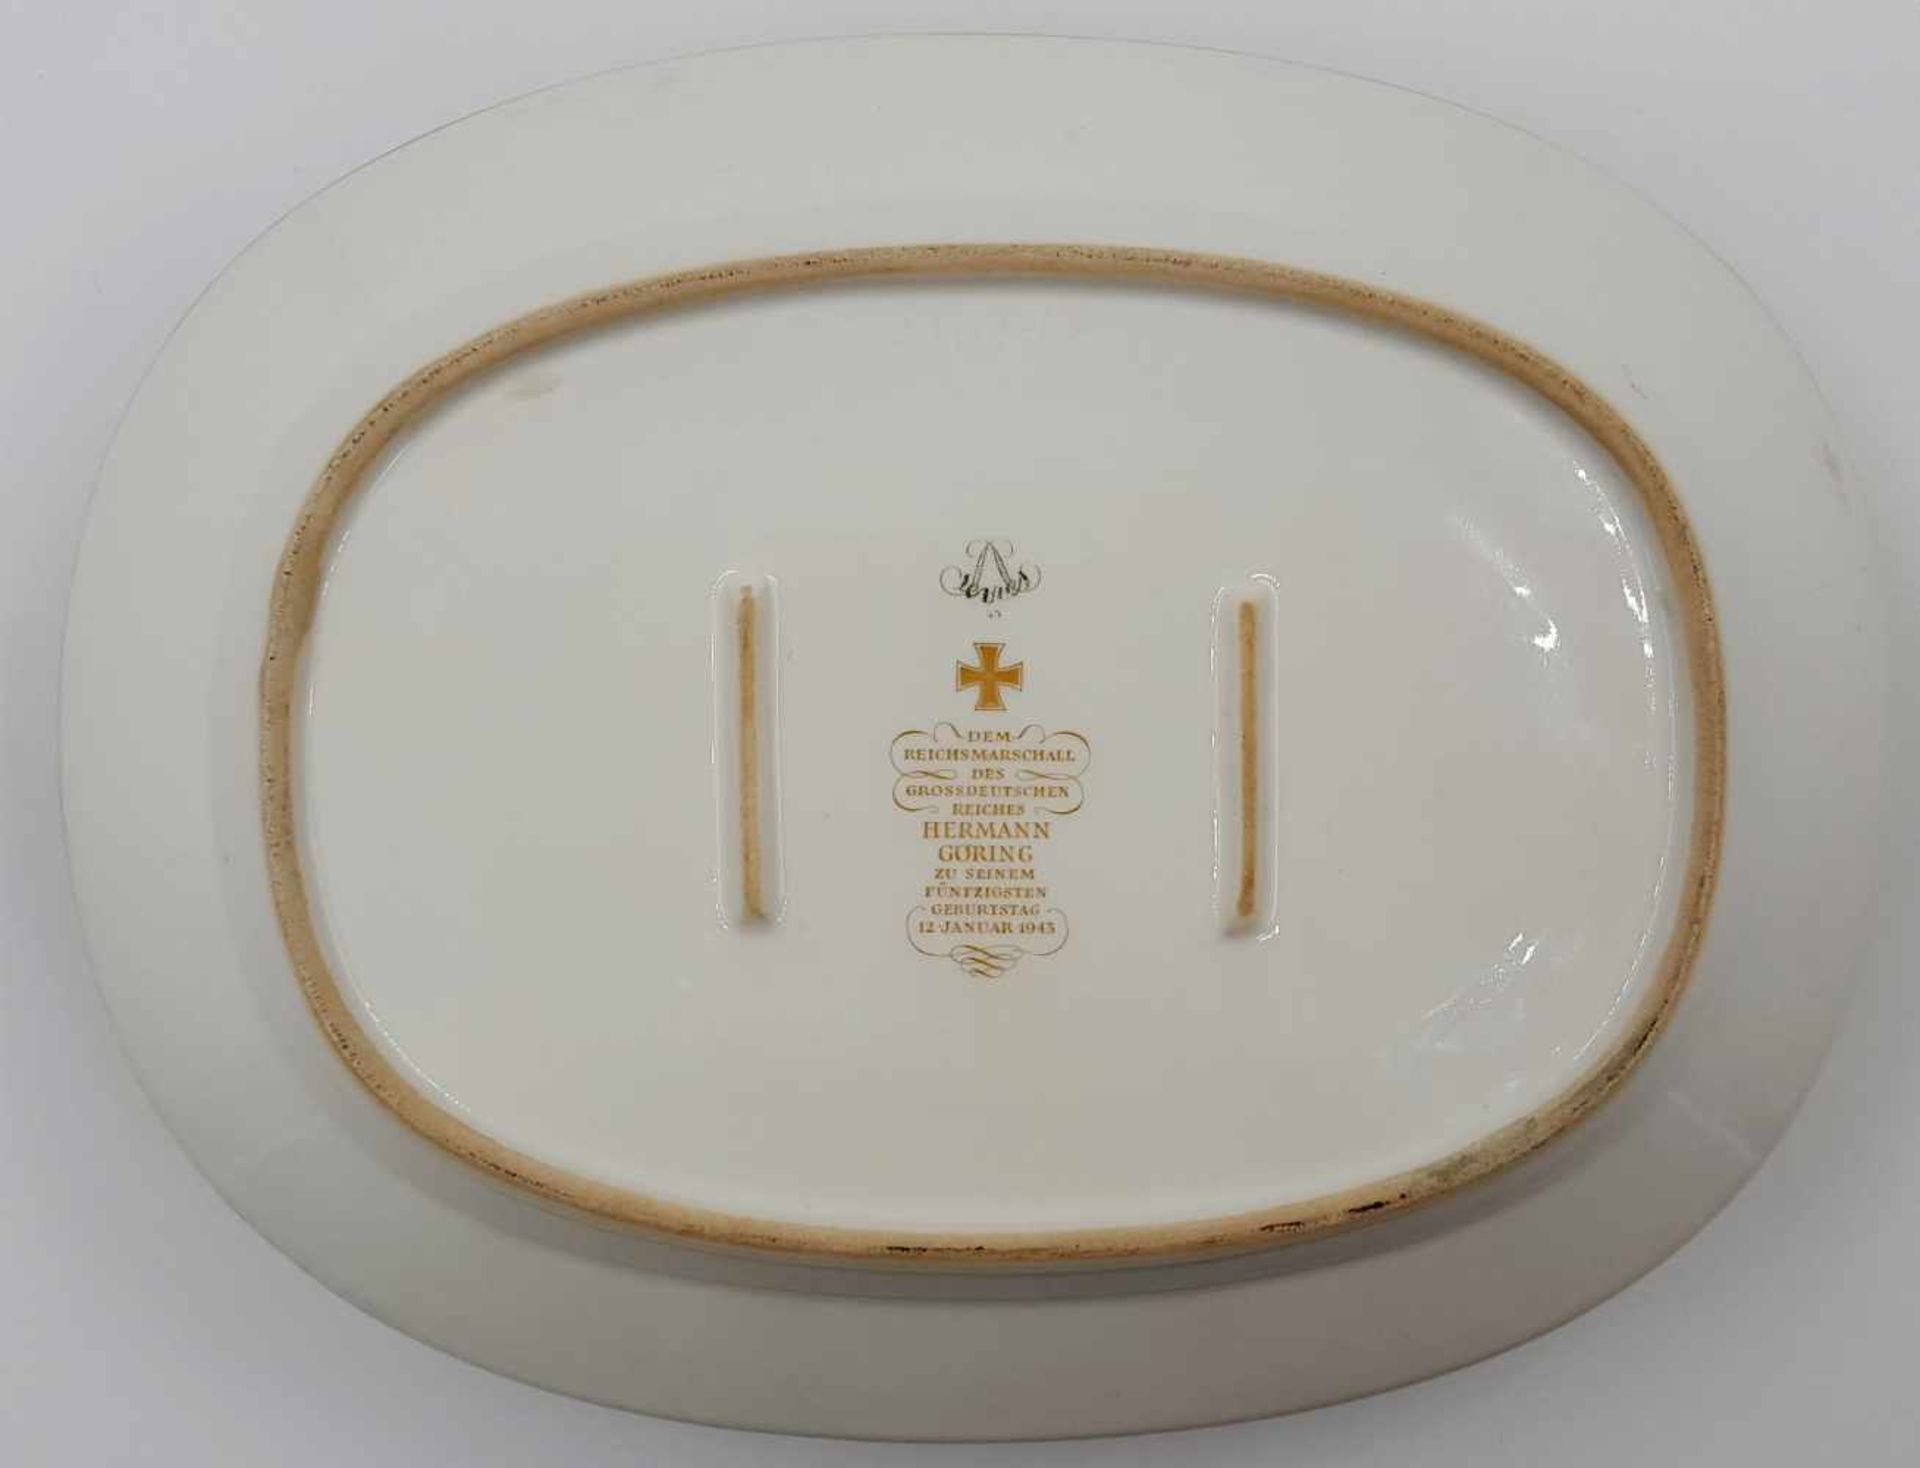 Sevres porcelain. France. Saucer "Sèvres 43" " 'Reichskreuz' "< - Image 6 of 9